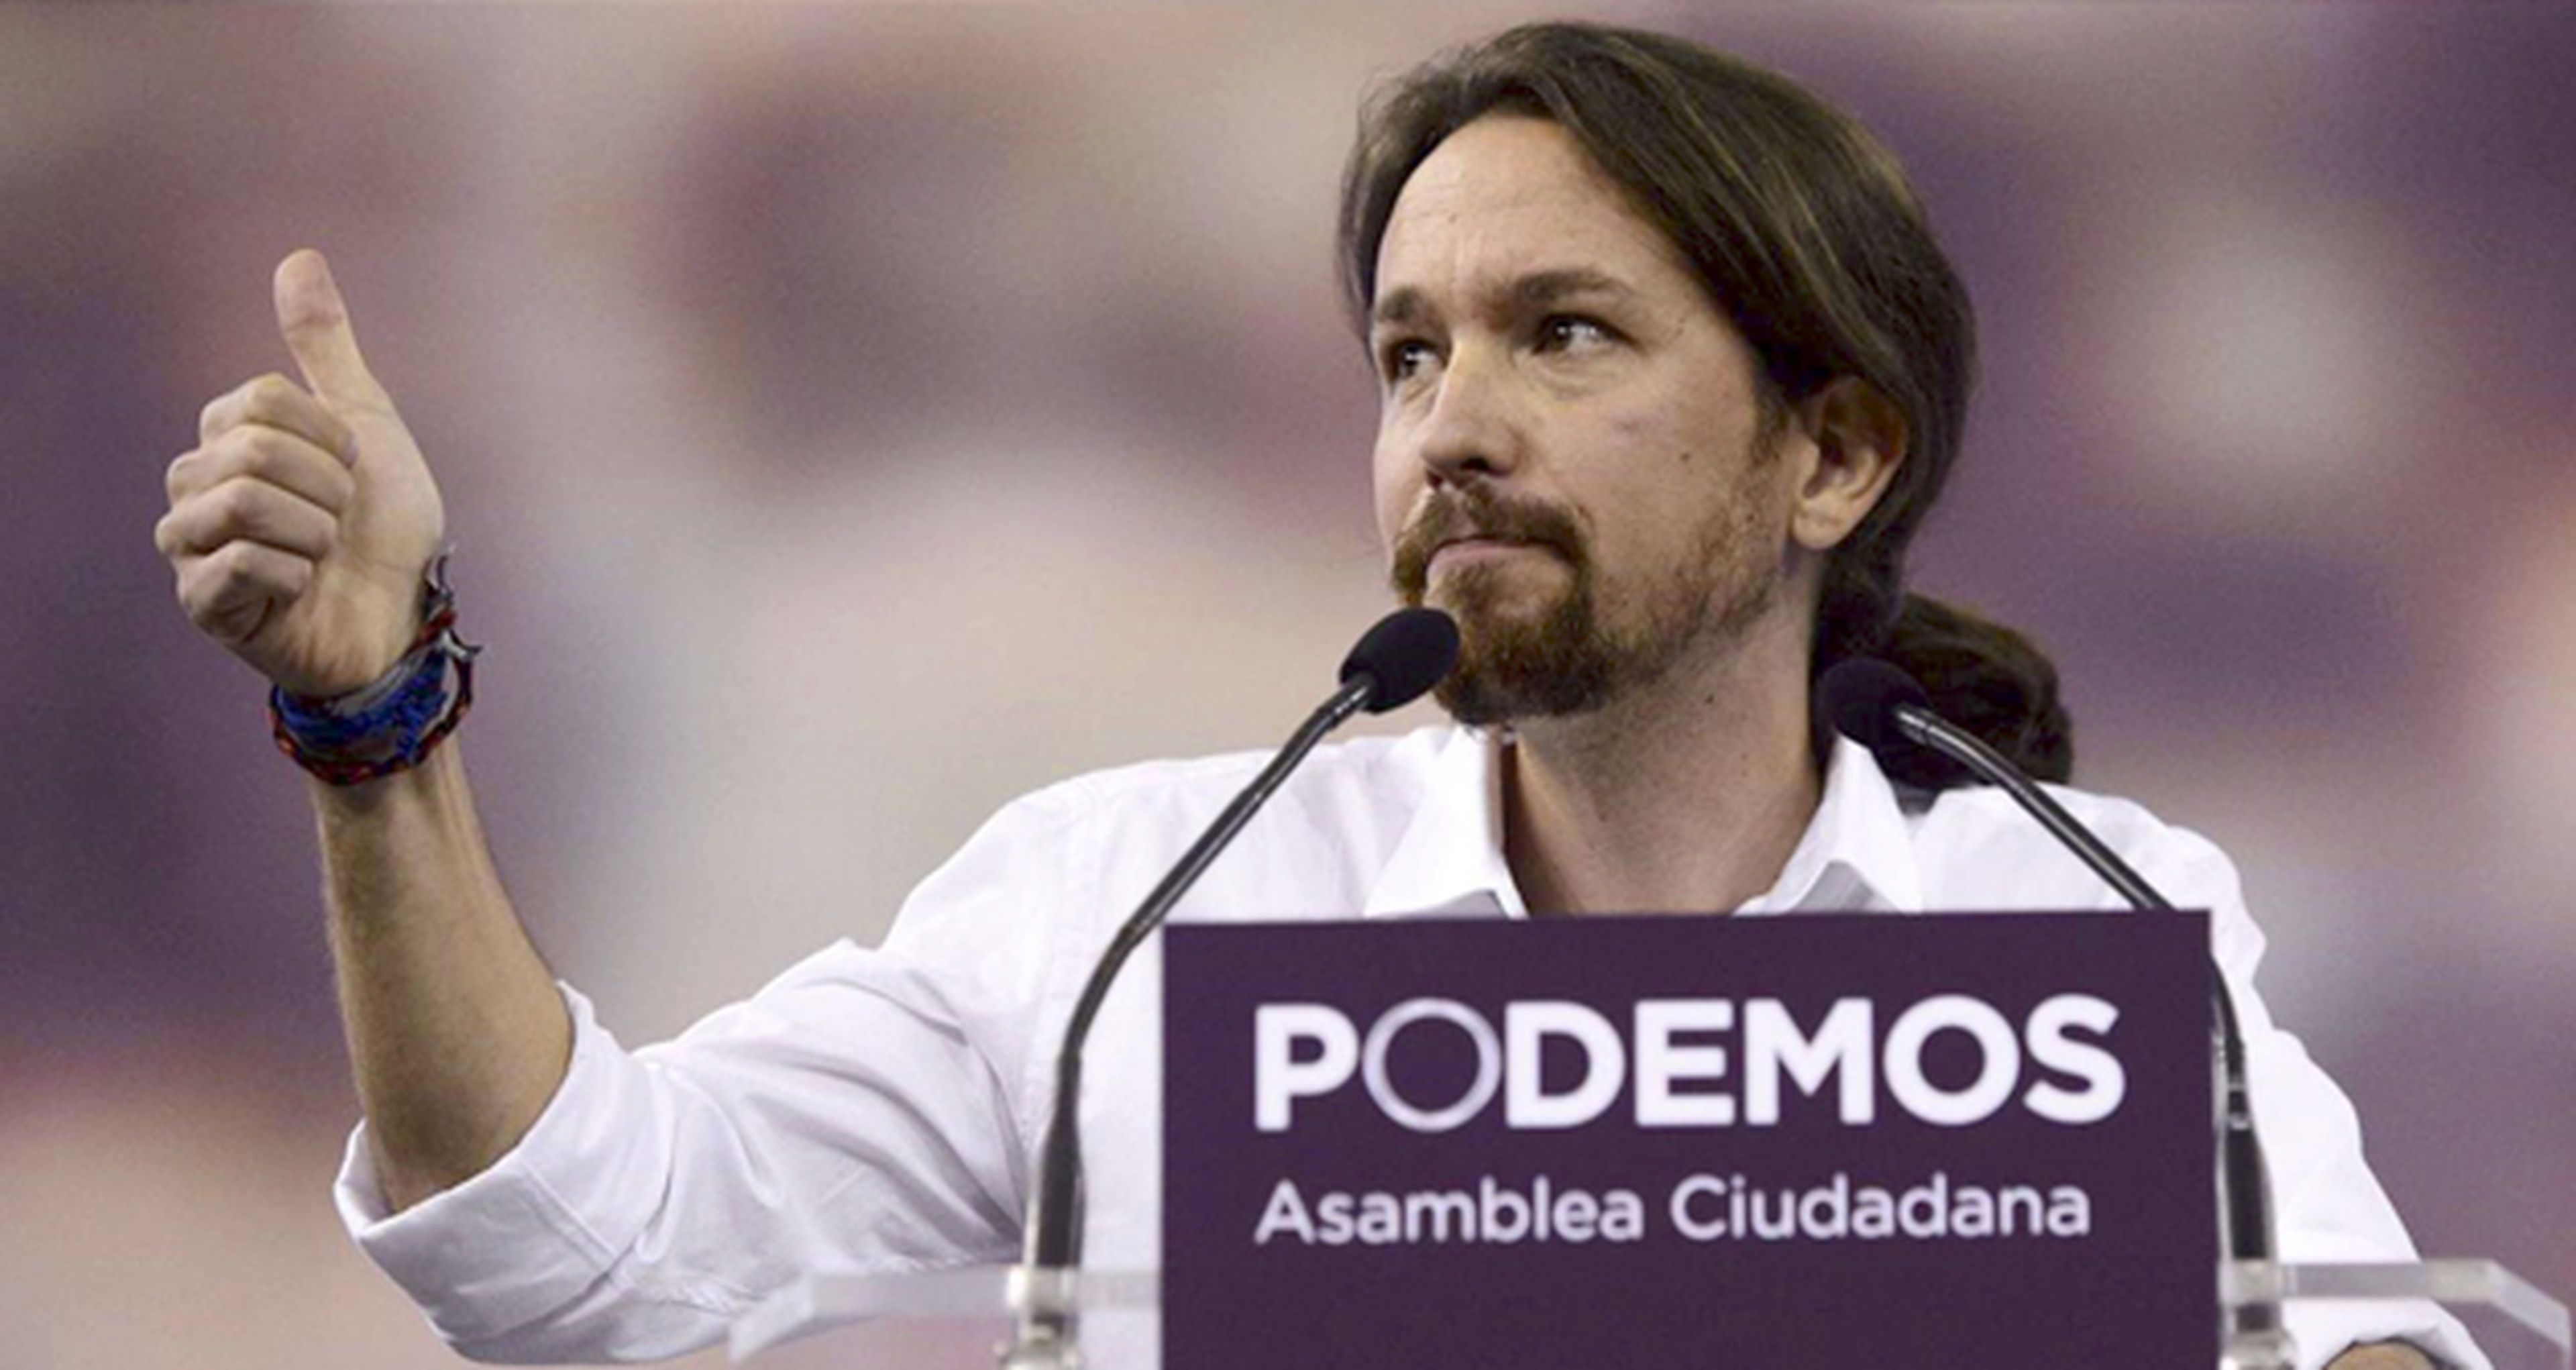 La película de Podemos se estrenará un día después de las elecciones